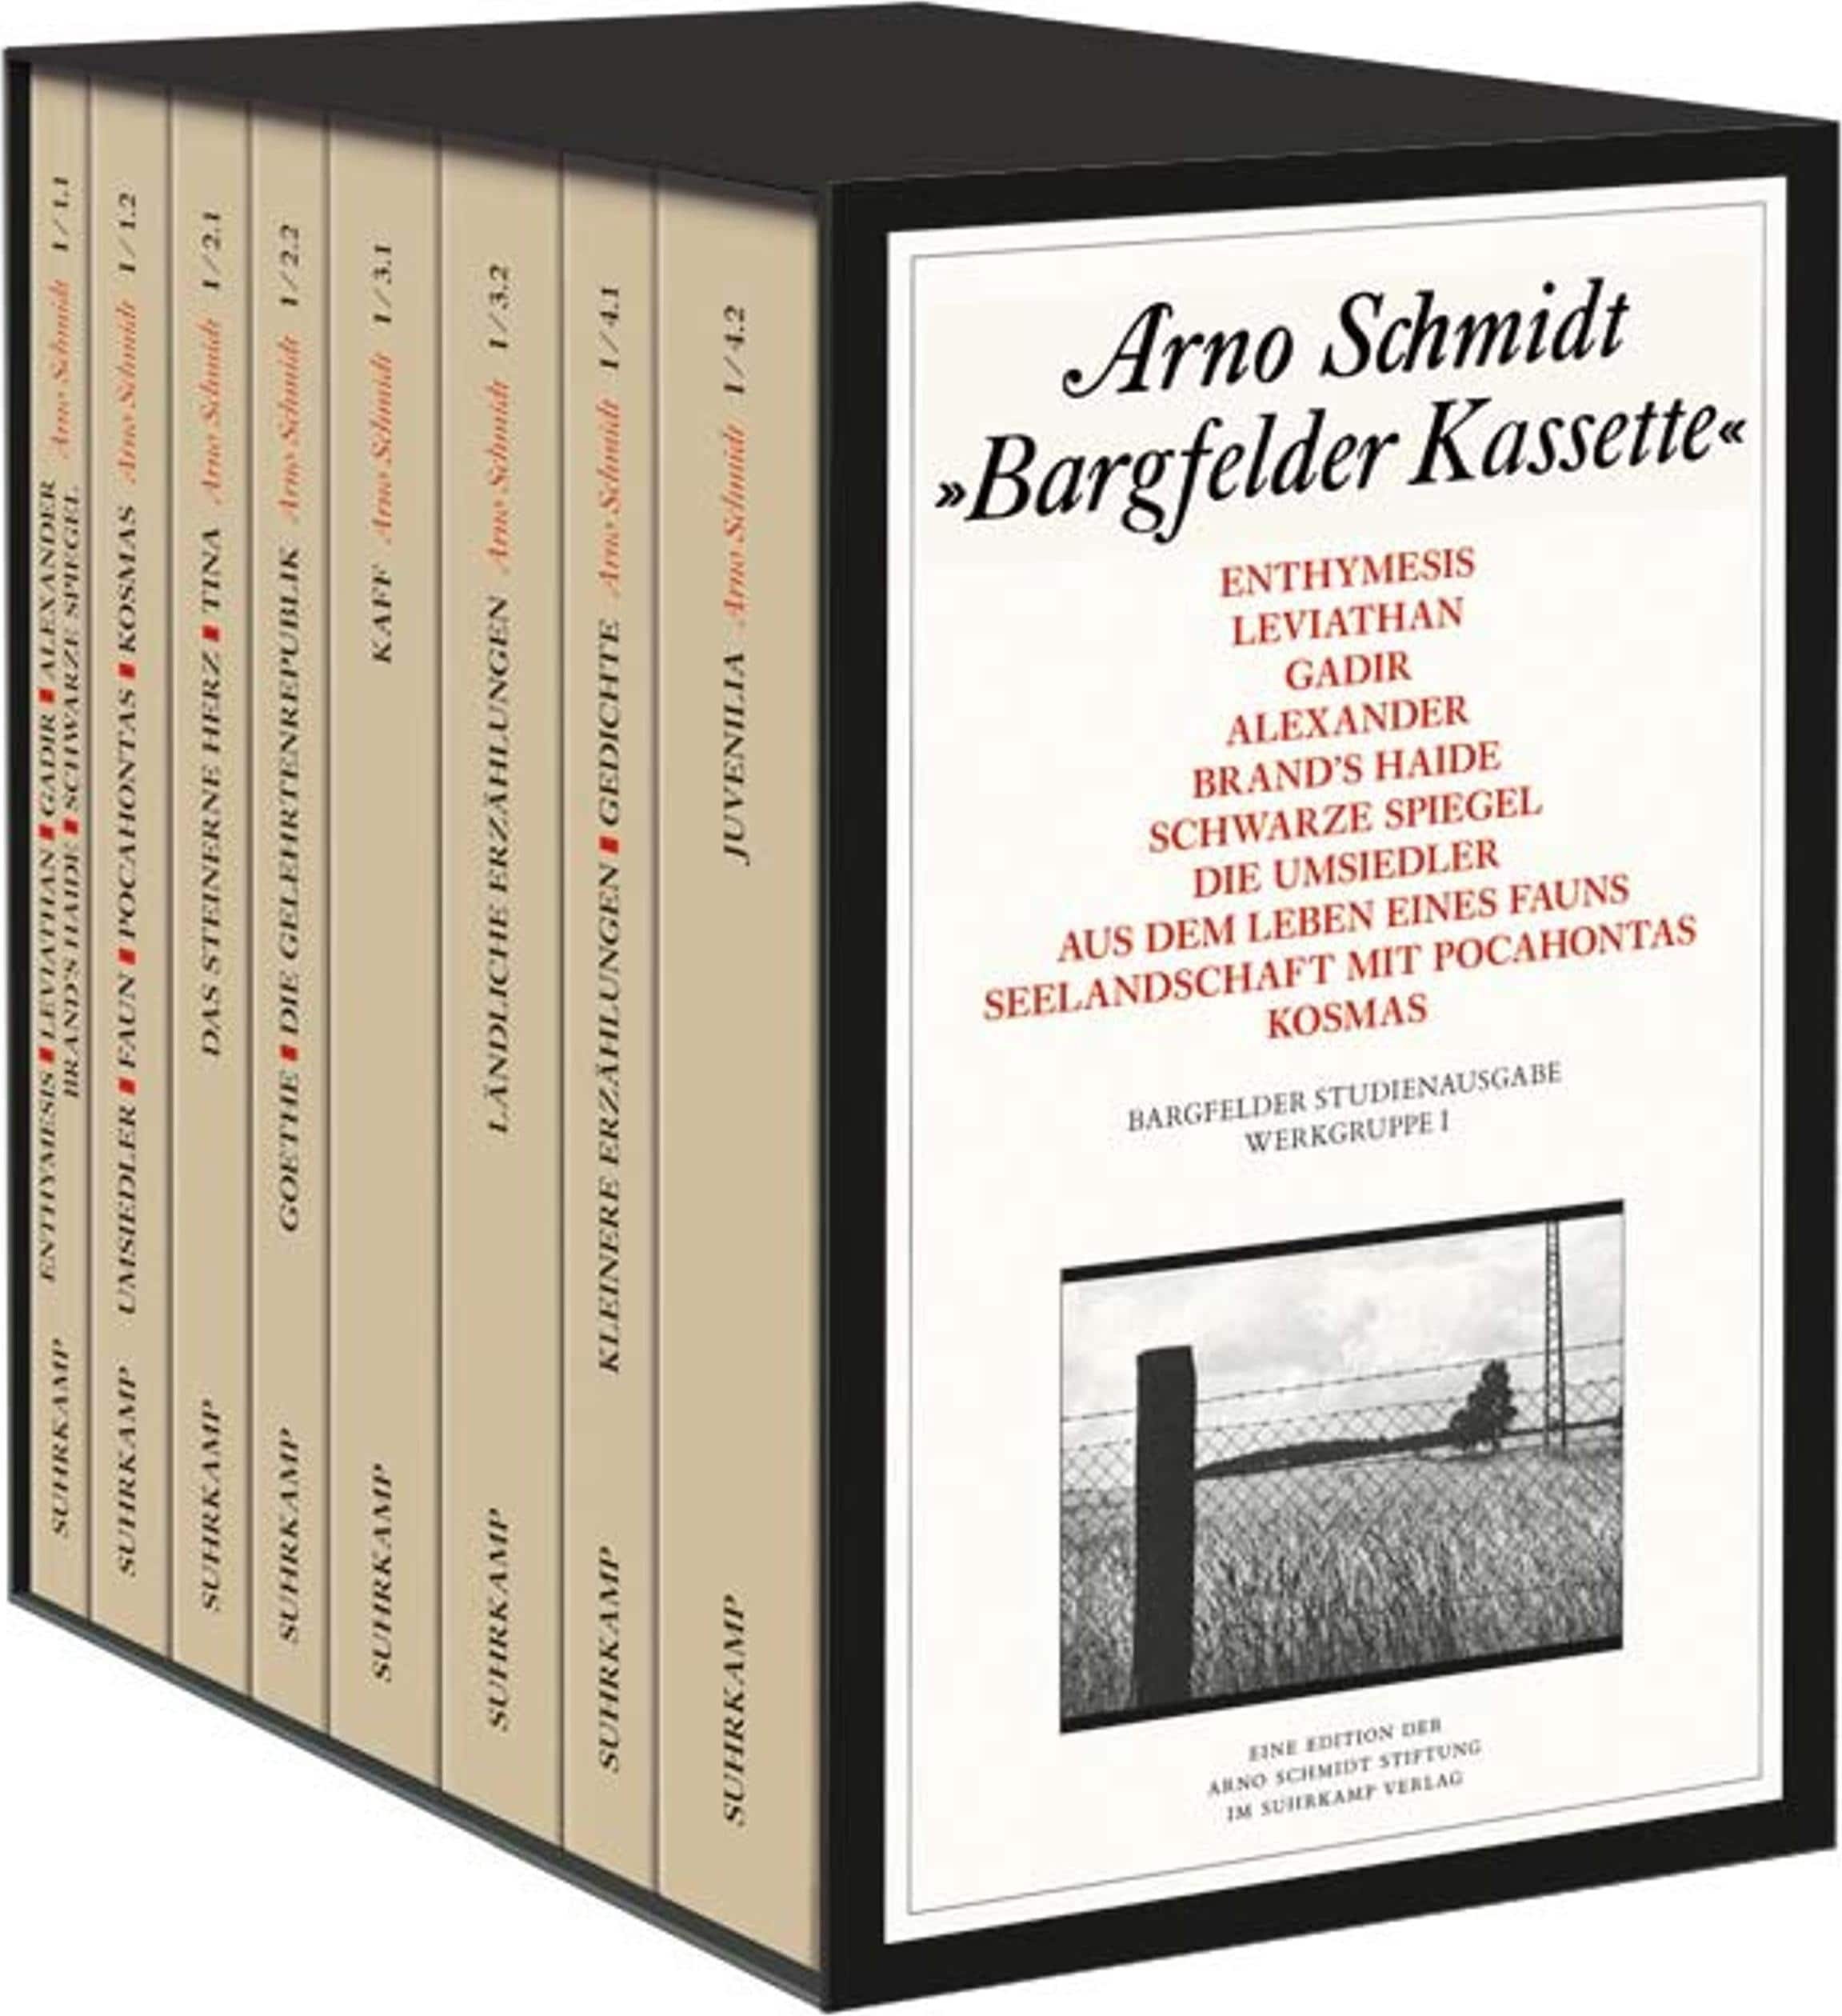 Bargfelder Ausgabe. Studienausgabe der Werkgruppe I: Romane, Erzählungen, Gedichte, Juvenilia, Belletristik von Arno Schmidt